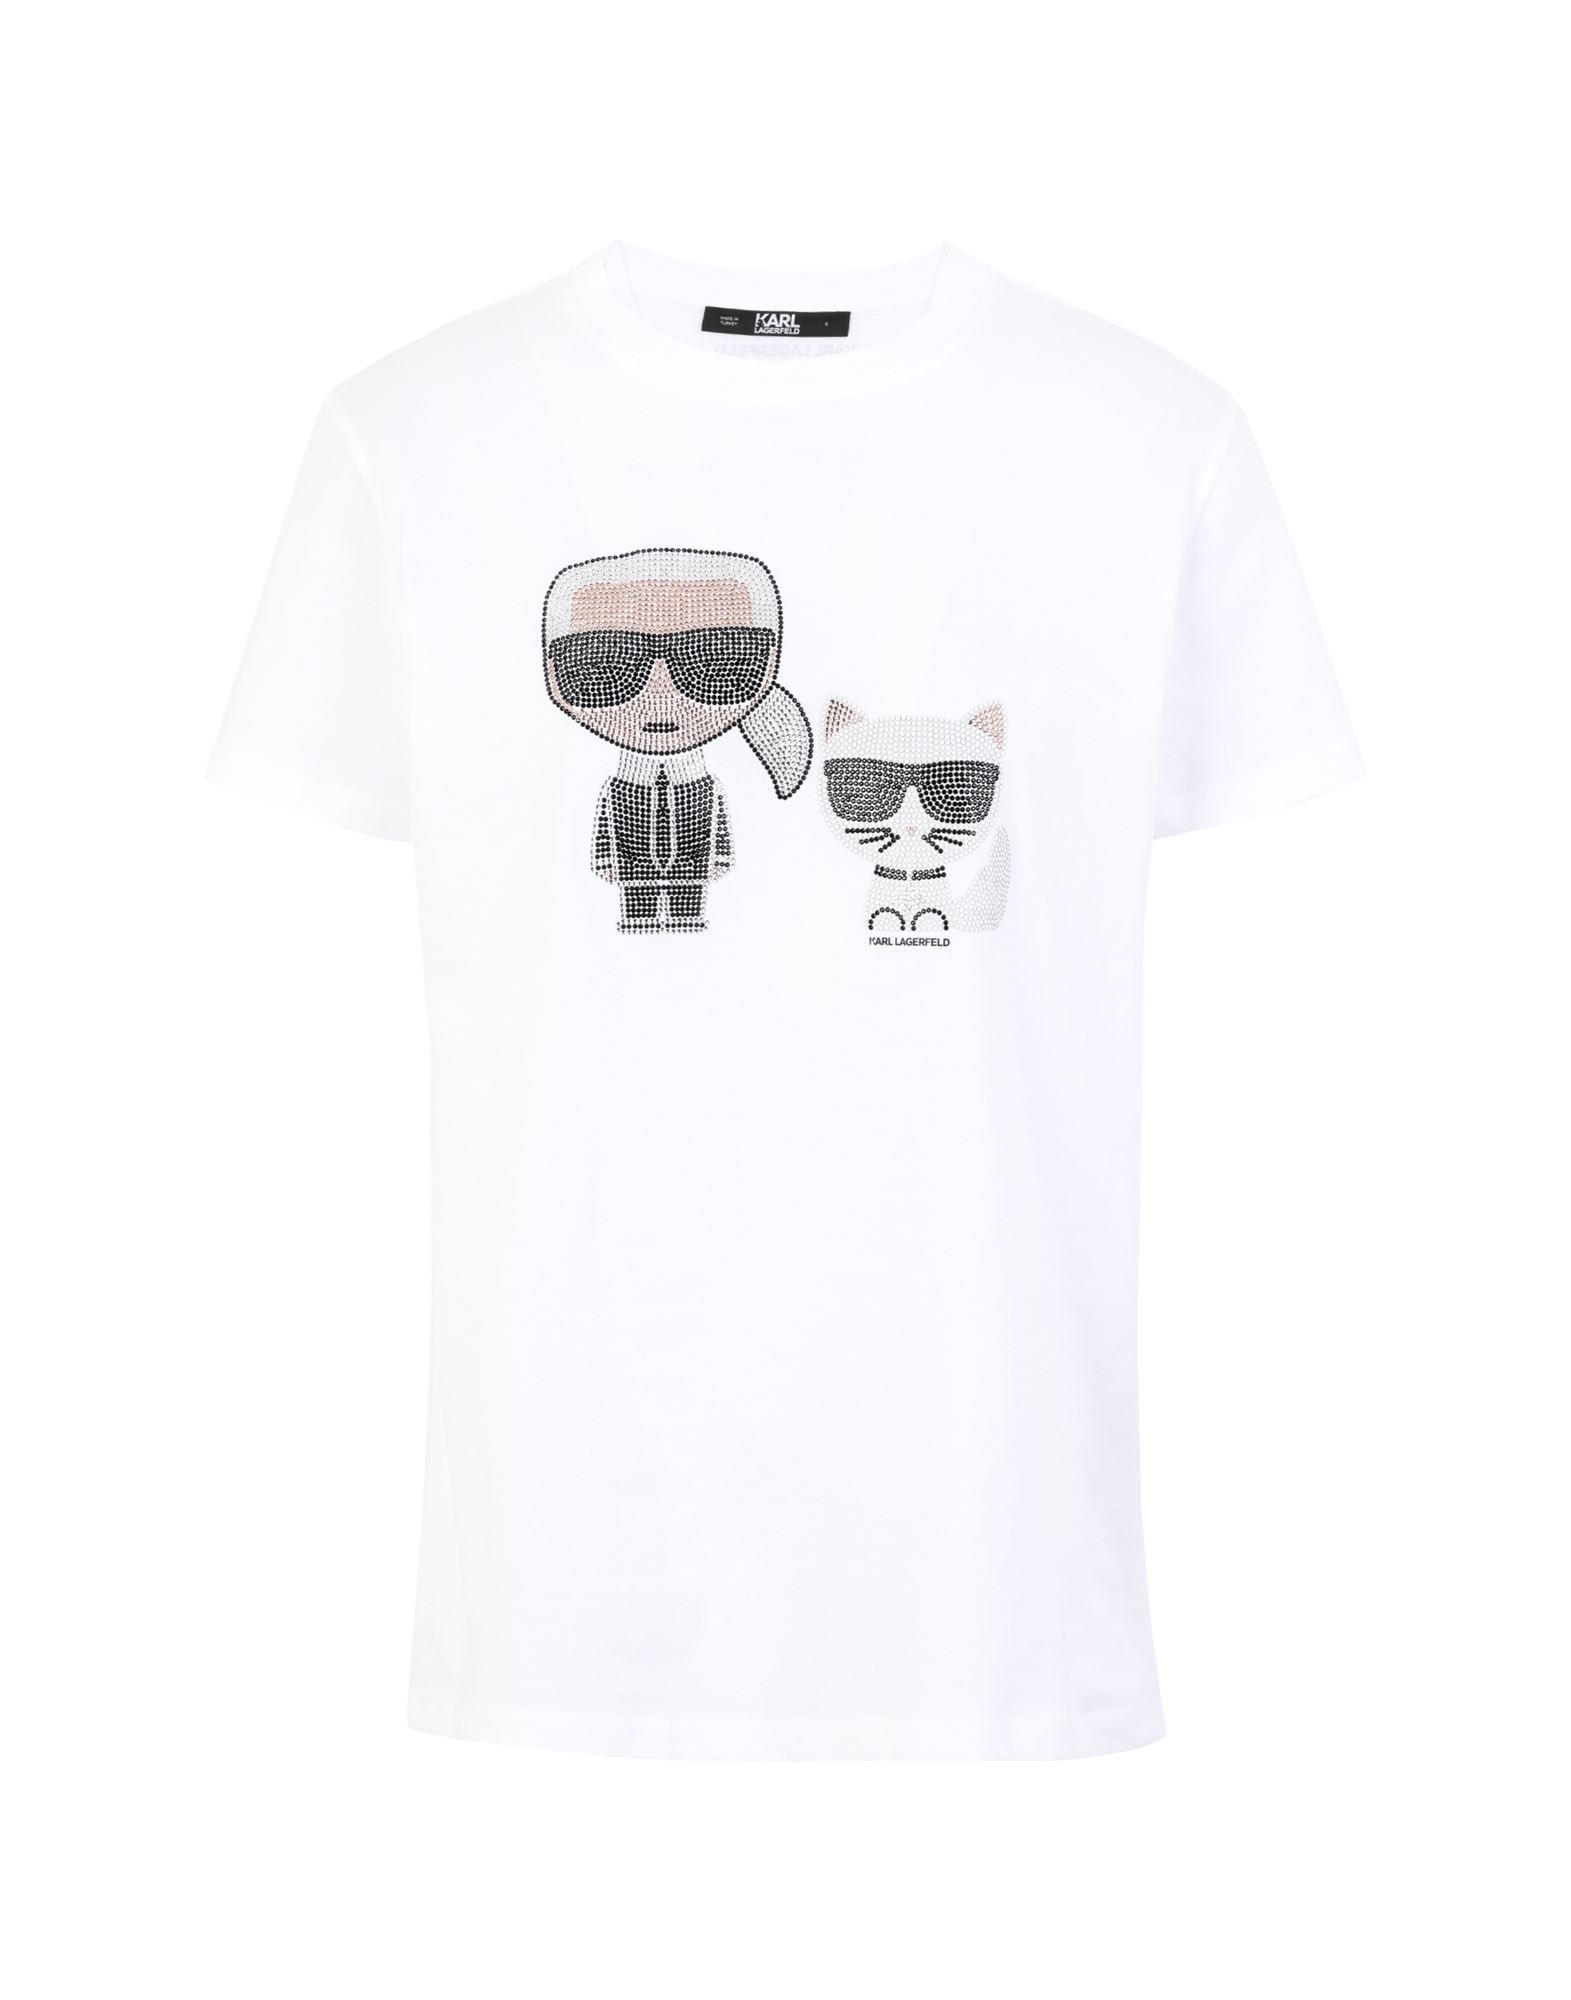 KARL LAGERFELD T-shirts | YOOX (US)